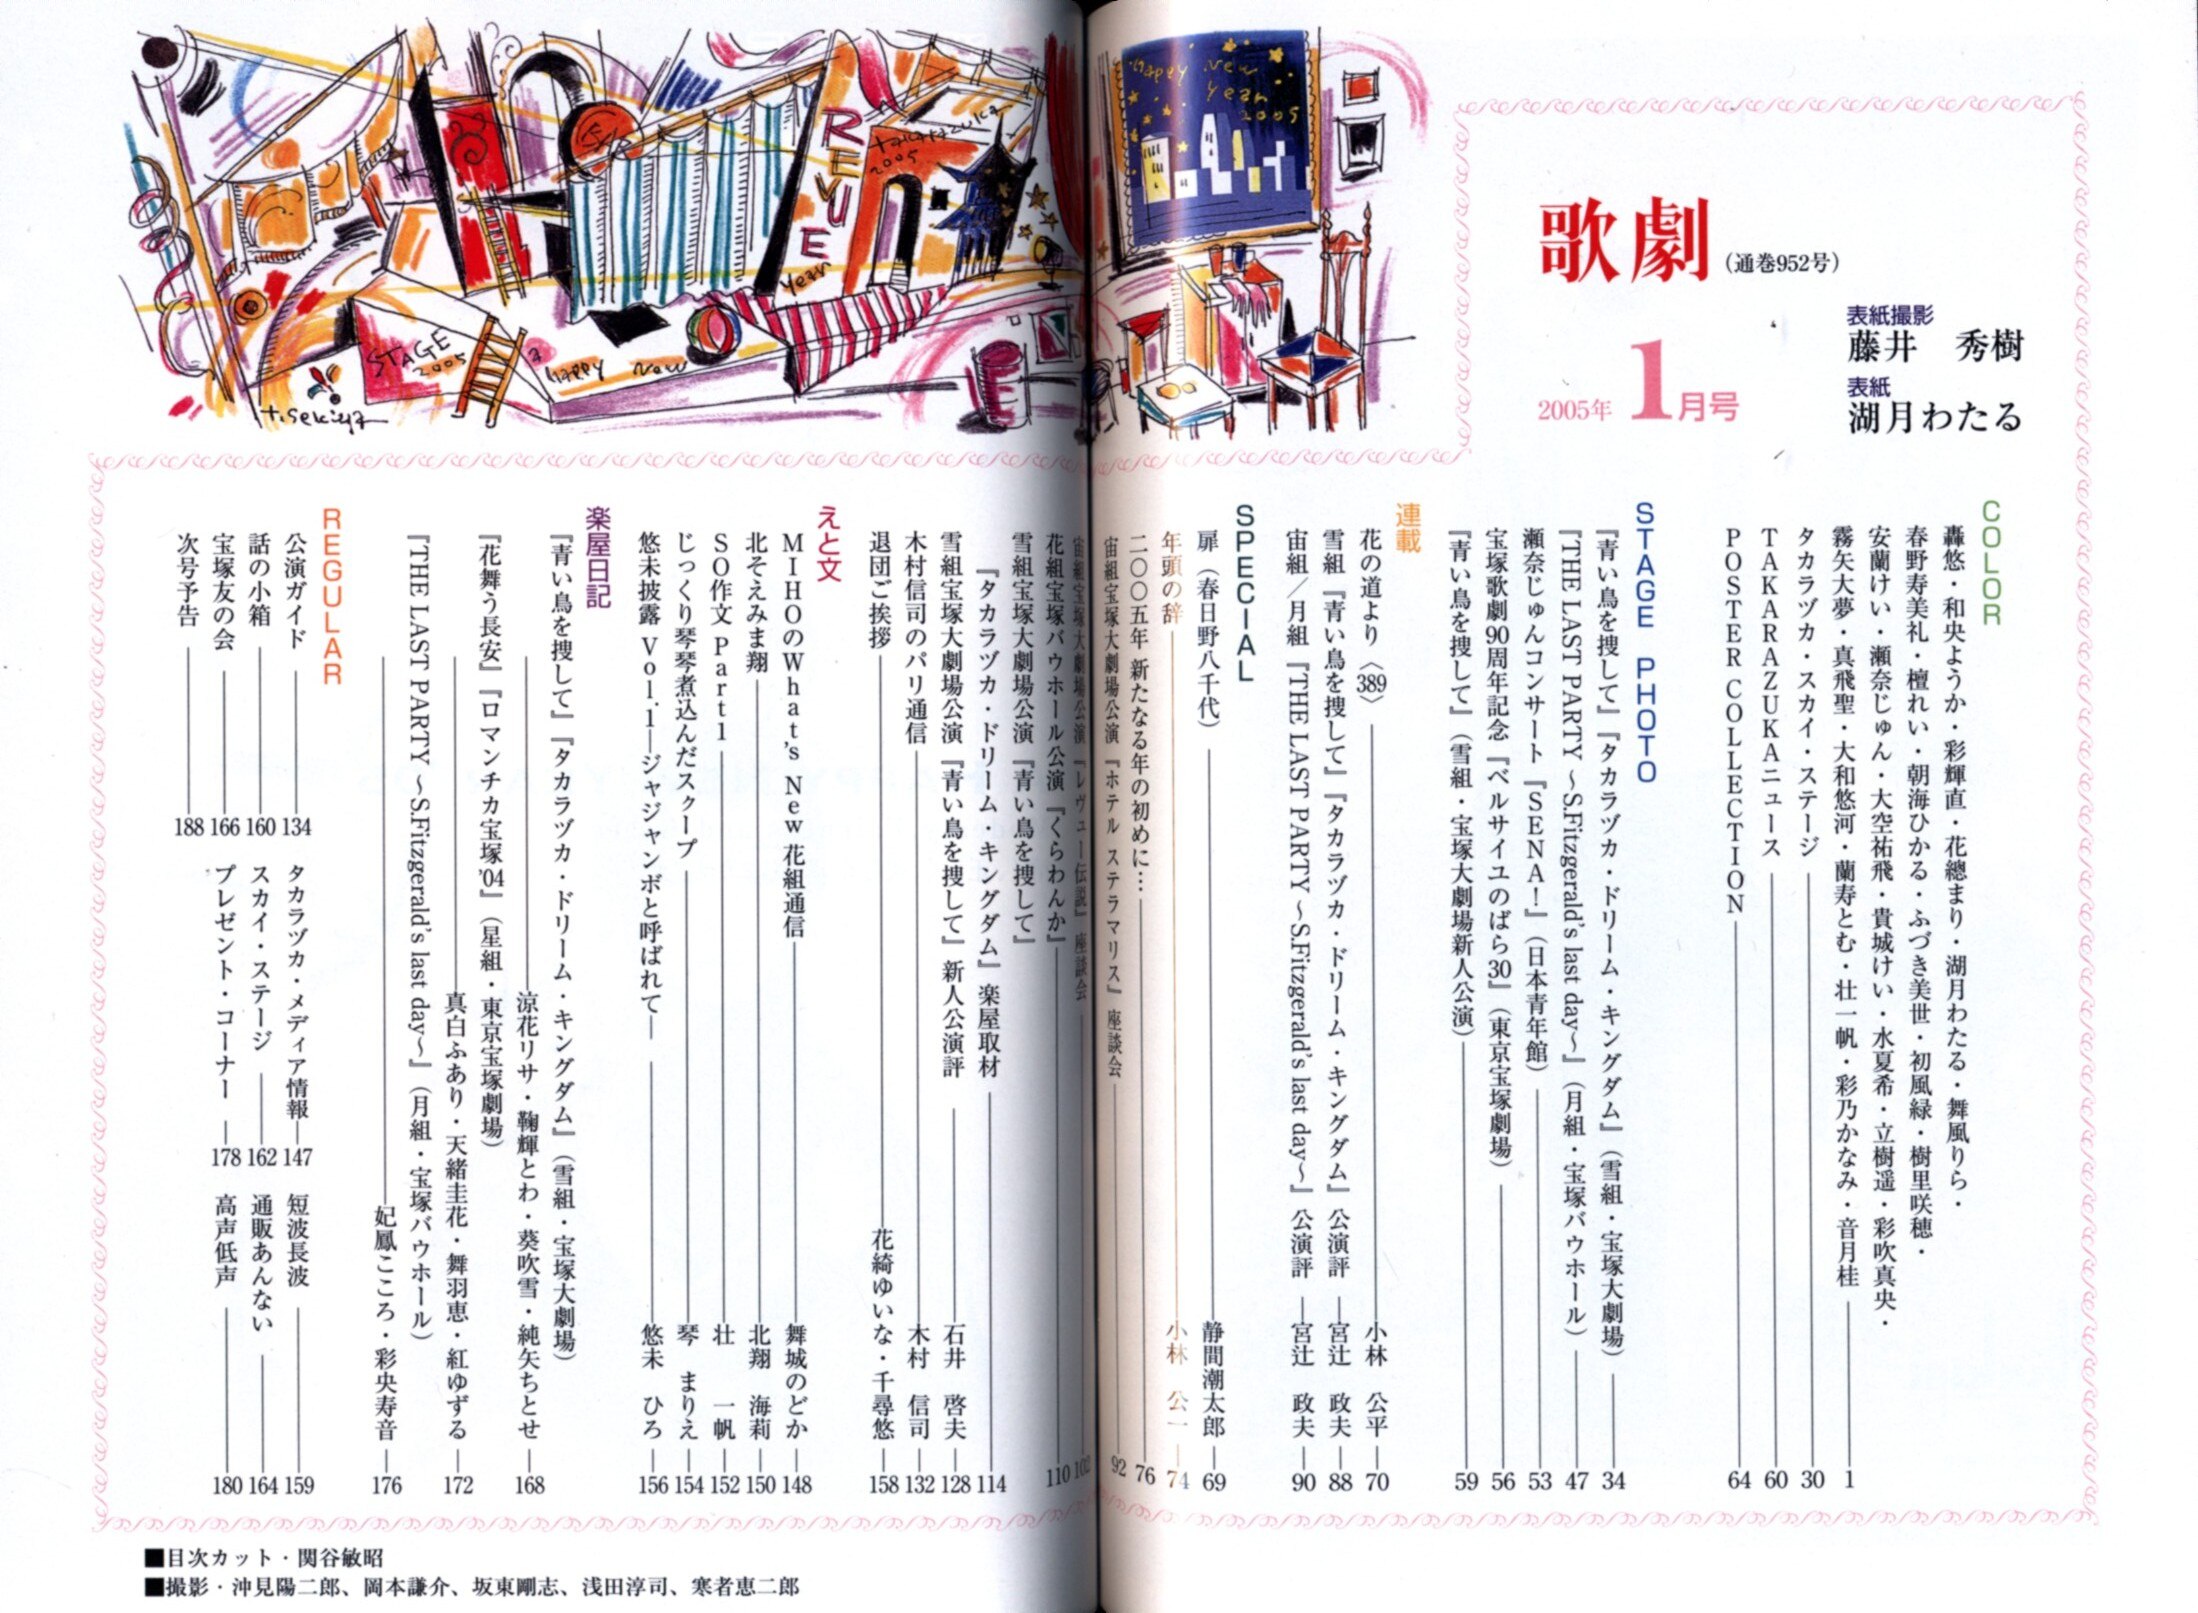 宝塚雑誌 阪急コミュニケーションズ 05年 1月号 歌劇 宝塚 まんだらけ Mandarake